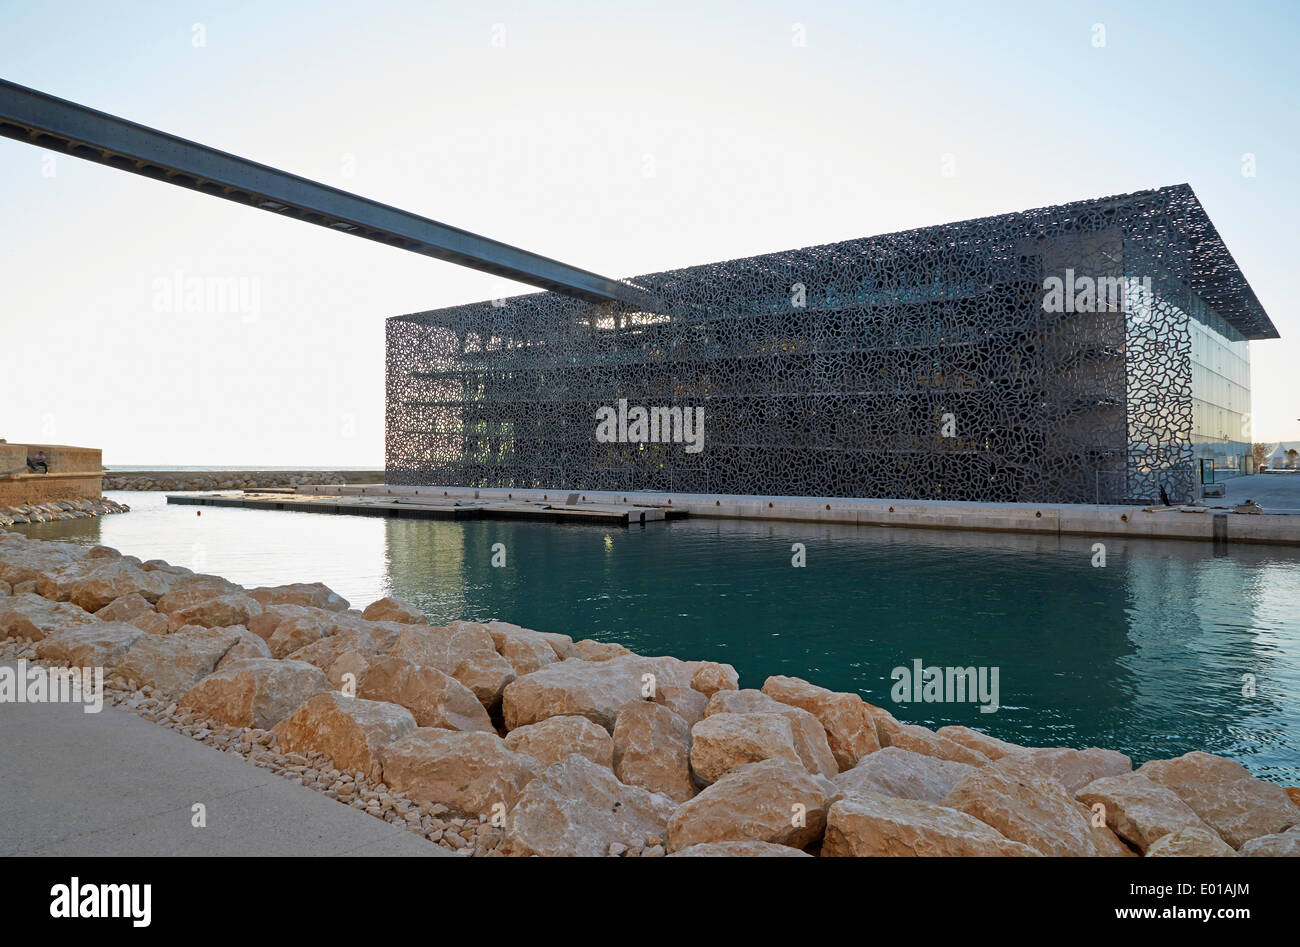 MuCEM (Museum der europäischen Zivilisation und das Mittelmeer), Marseille, Frankreich. Architekt: Rudy Ricciotti, 2013. Stockfoto